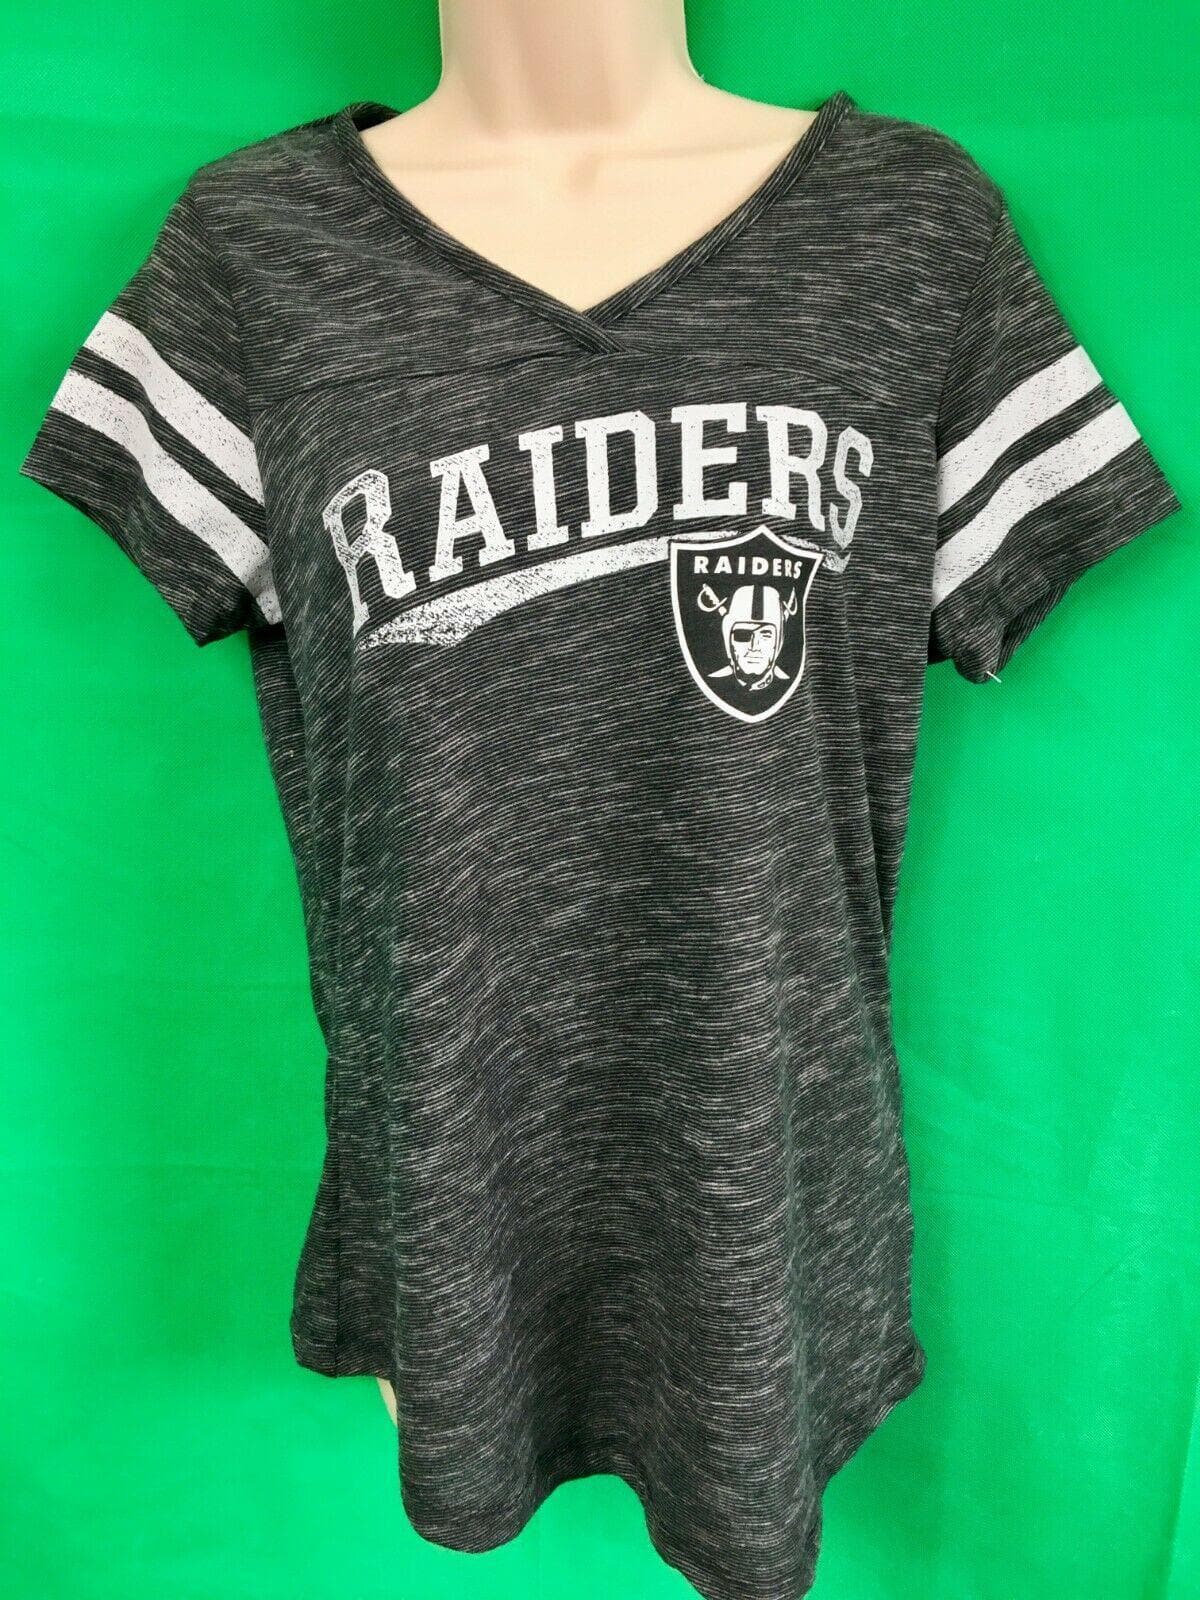 NFL Las Vegas Raiders Striped T-Shirt Women's Small NWT